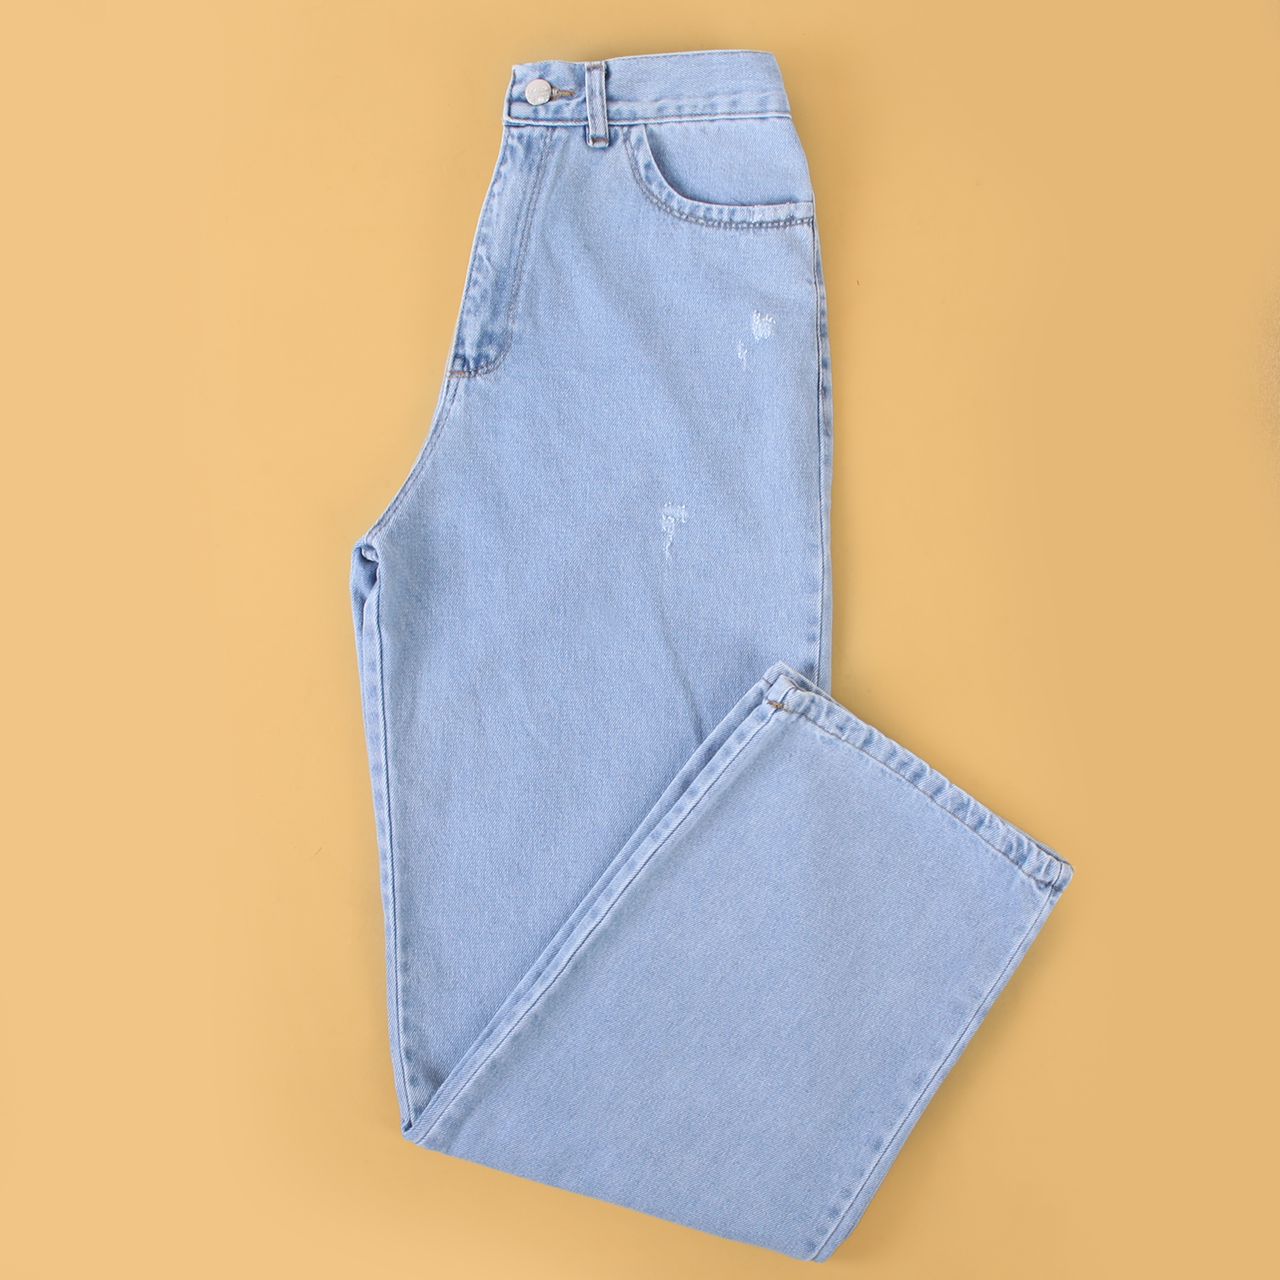 بهترین مدل شلوار جین برای فرم اندام شما کدام است؟